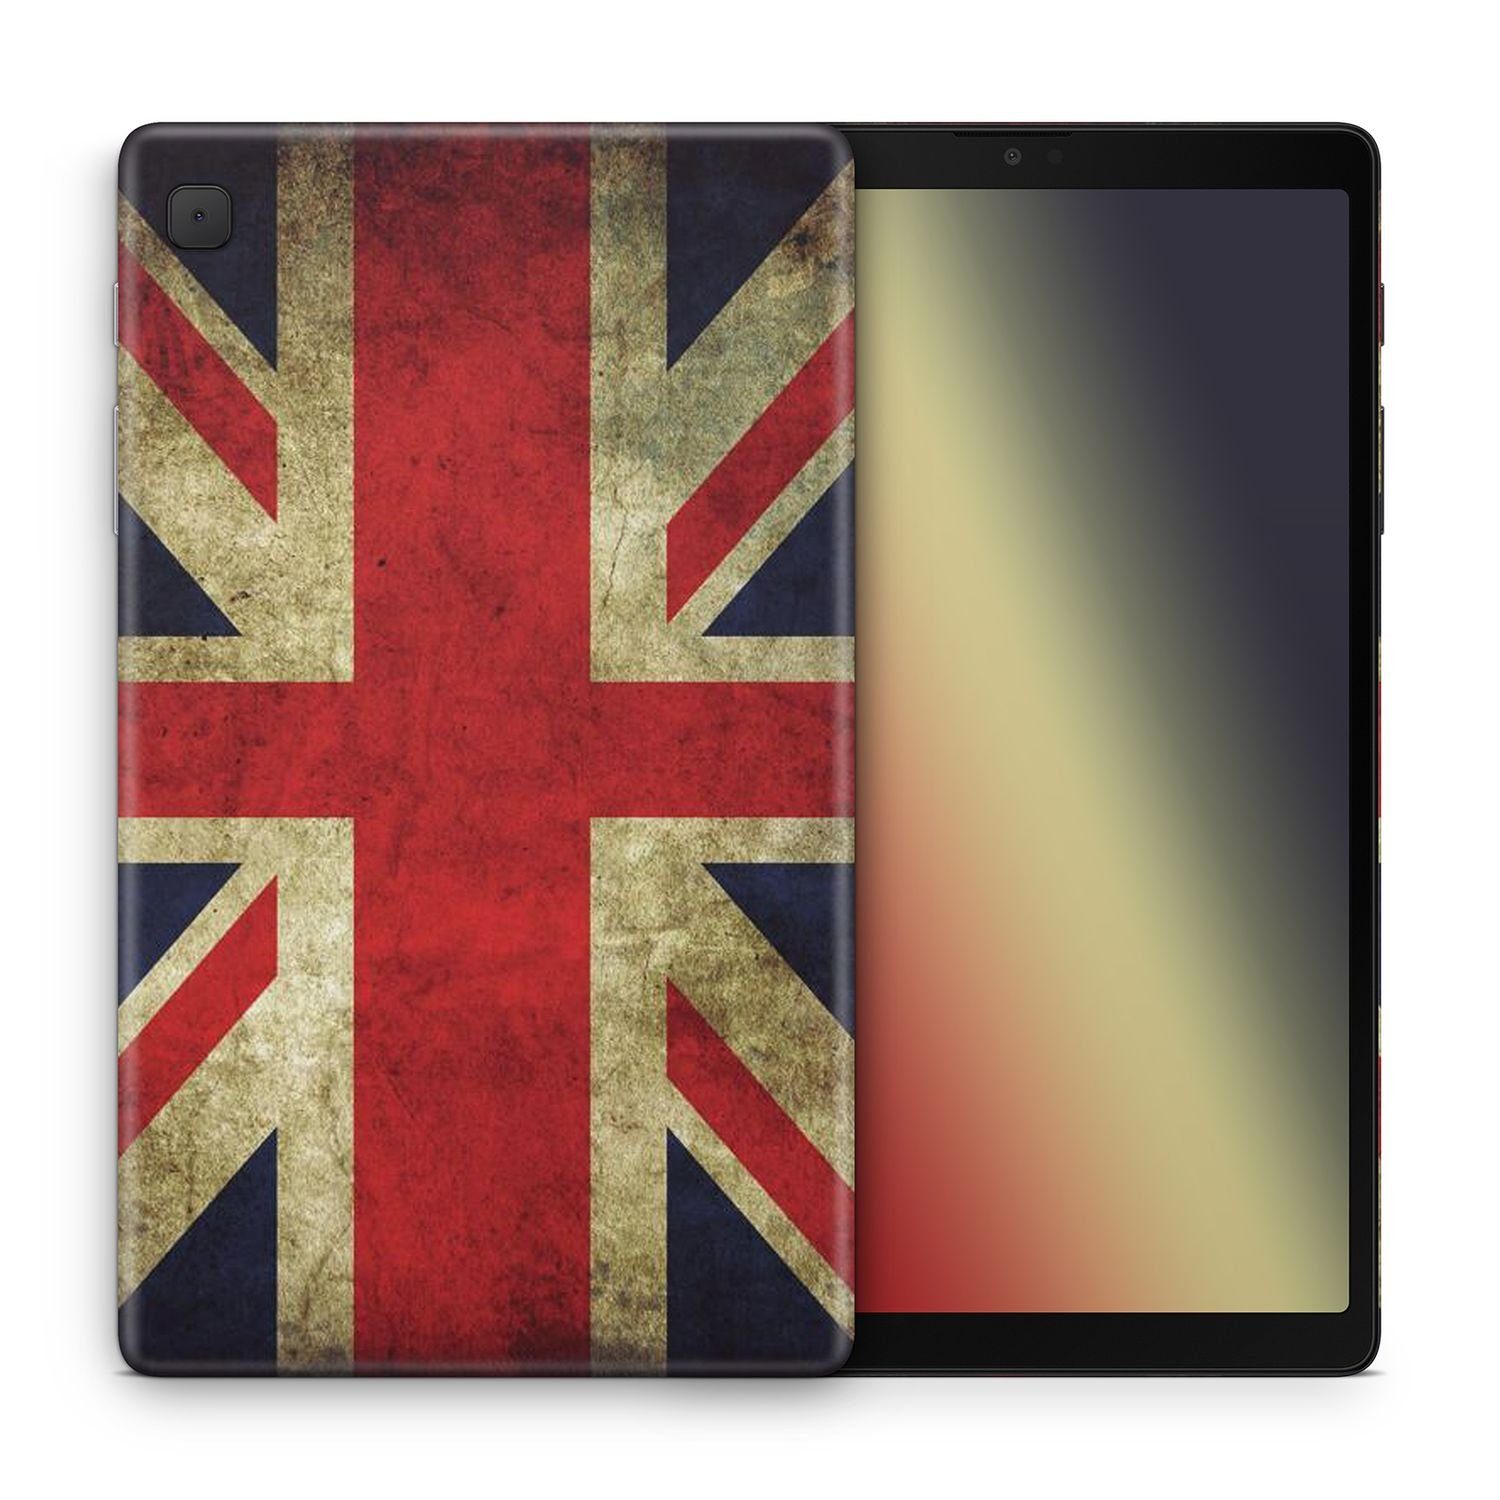 König Design Tablet-Hülle Huawei MediaPad T5, Tablet-Hülle für Huawei  MediaPad T5 - Silikon Case - Tablet Cover Tablethülle - England Flagge